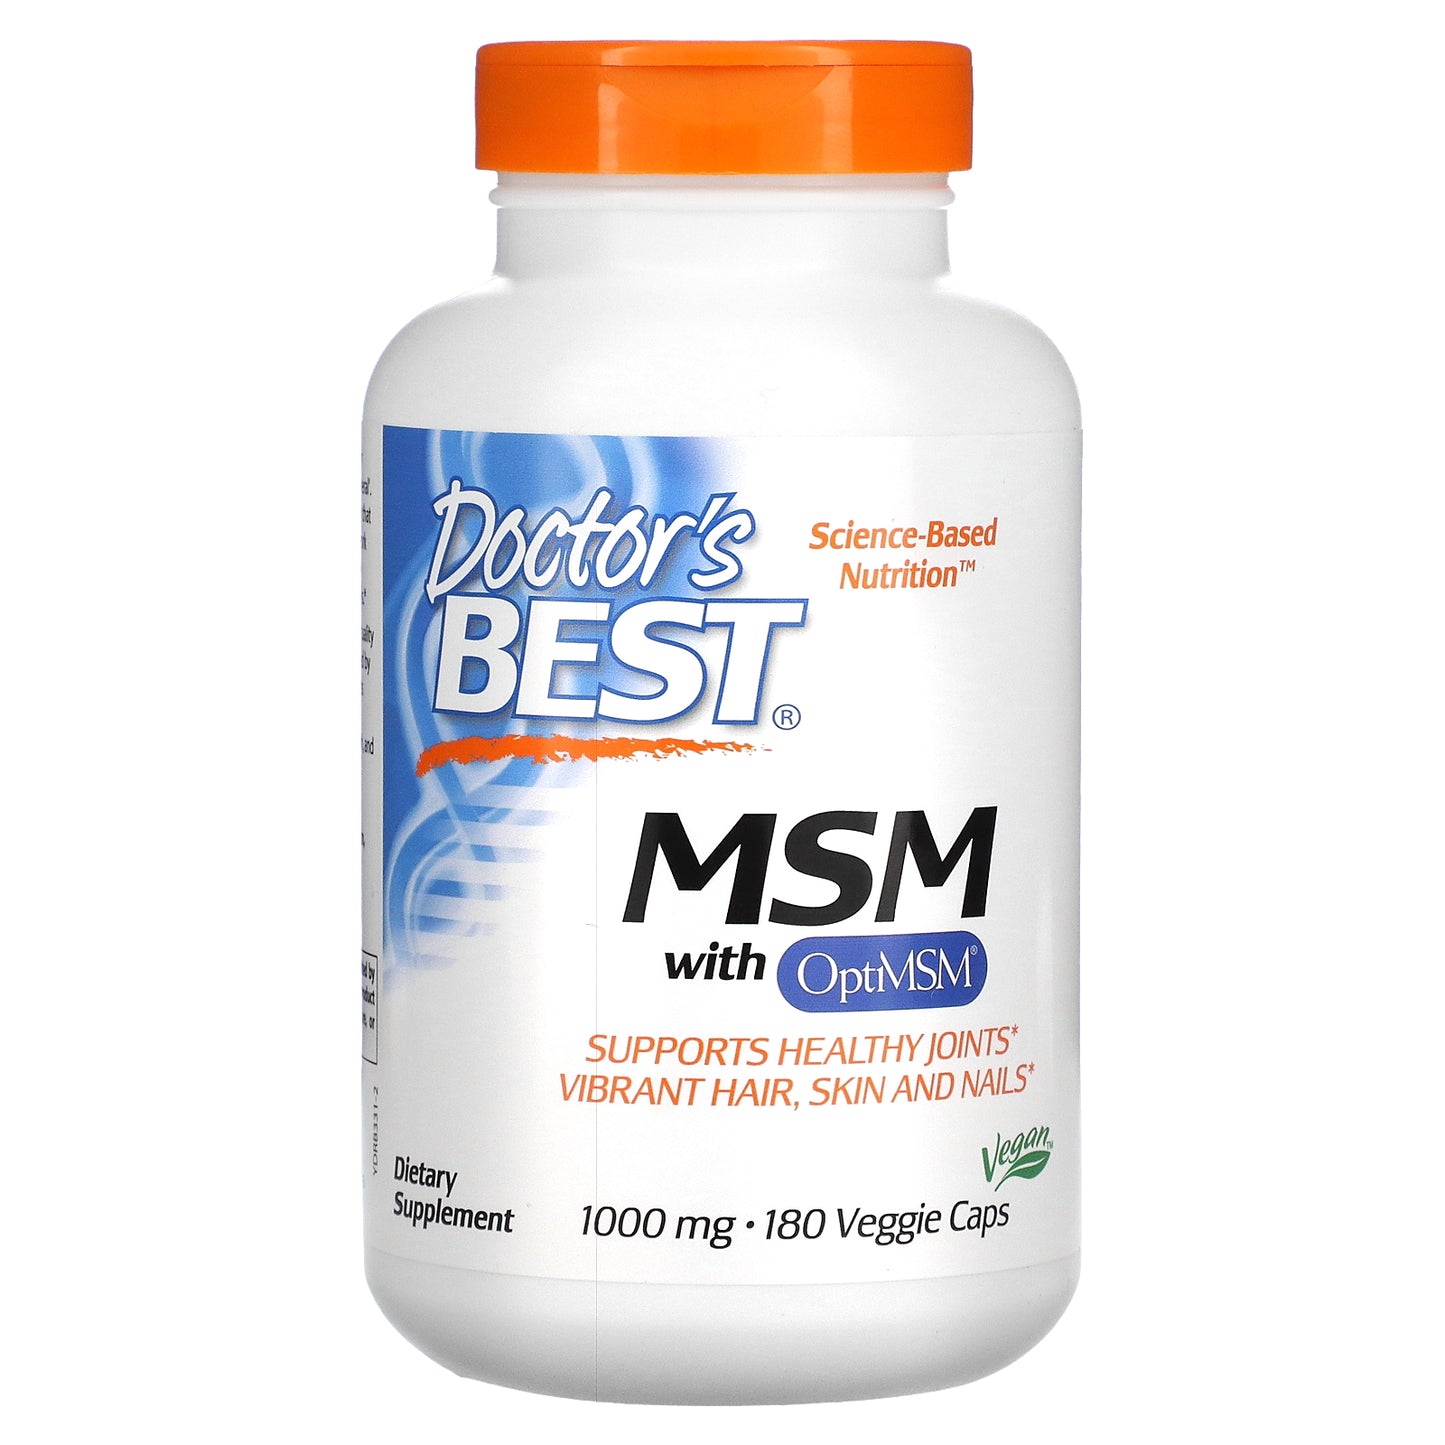 Doctor's Best MSM with OptiMSM, 1,000 mg, 180 Veggie Caps